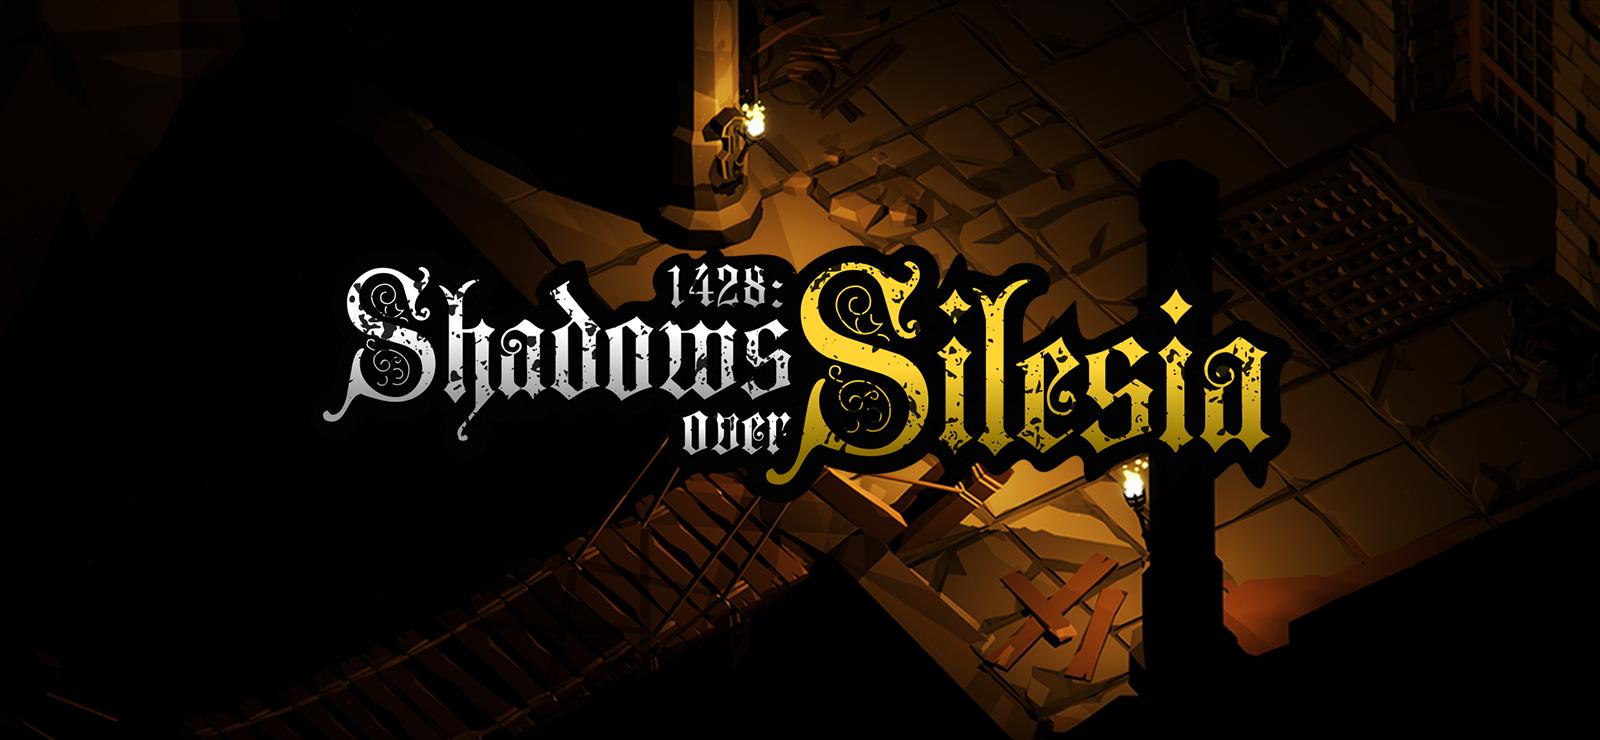 1428: Shadows Over Silesia - Deluxe Edition